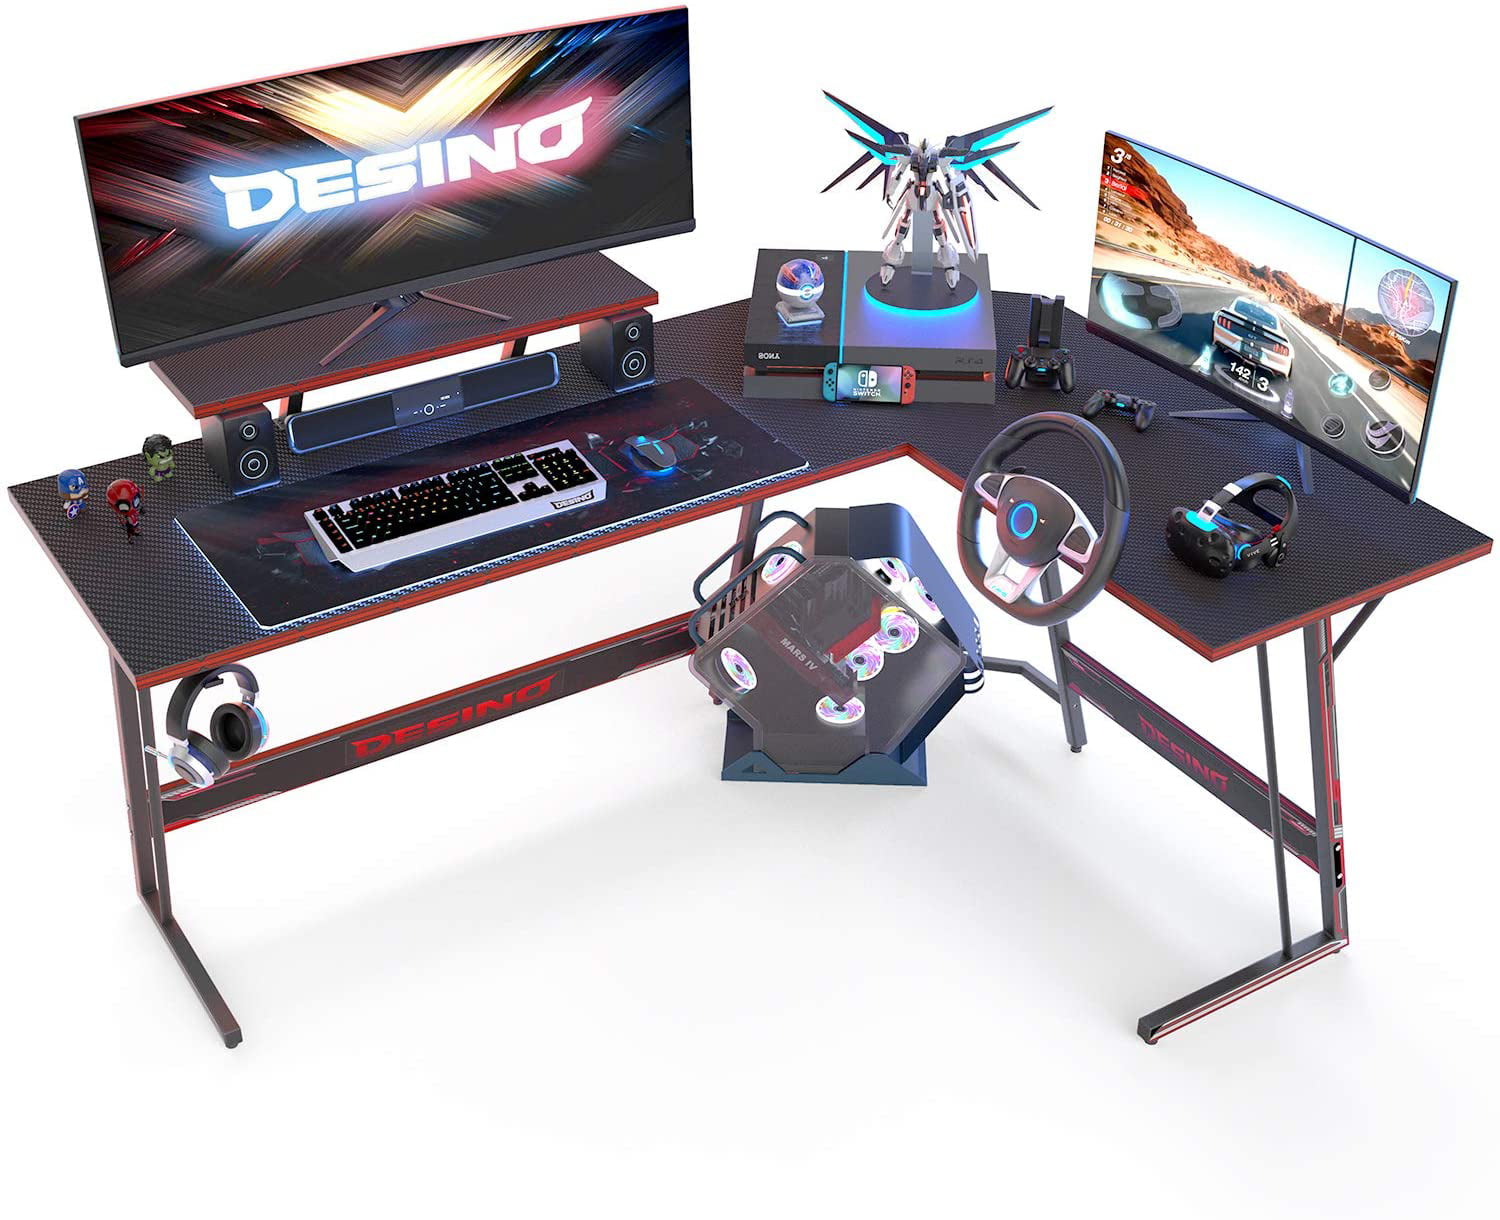 Desino L Shaped Gaming Desk Computer, Best Desks For Pc